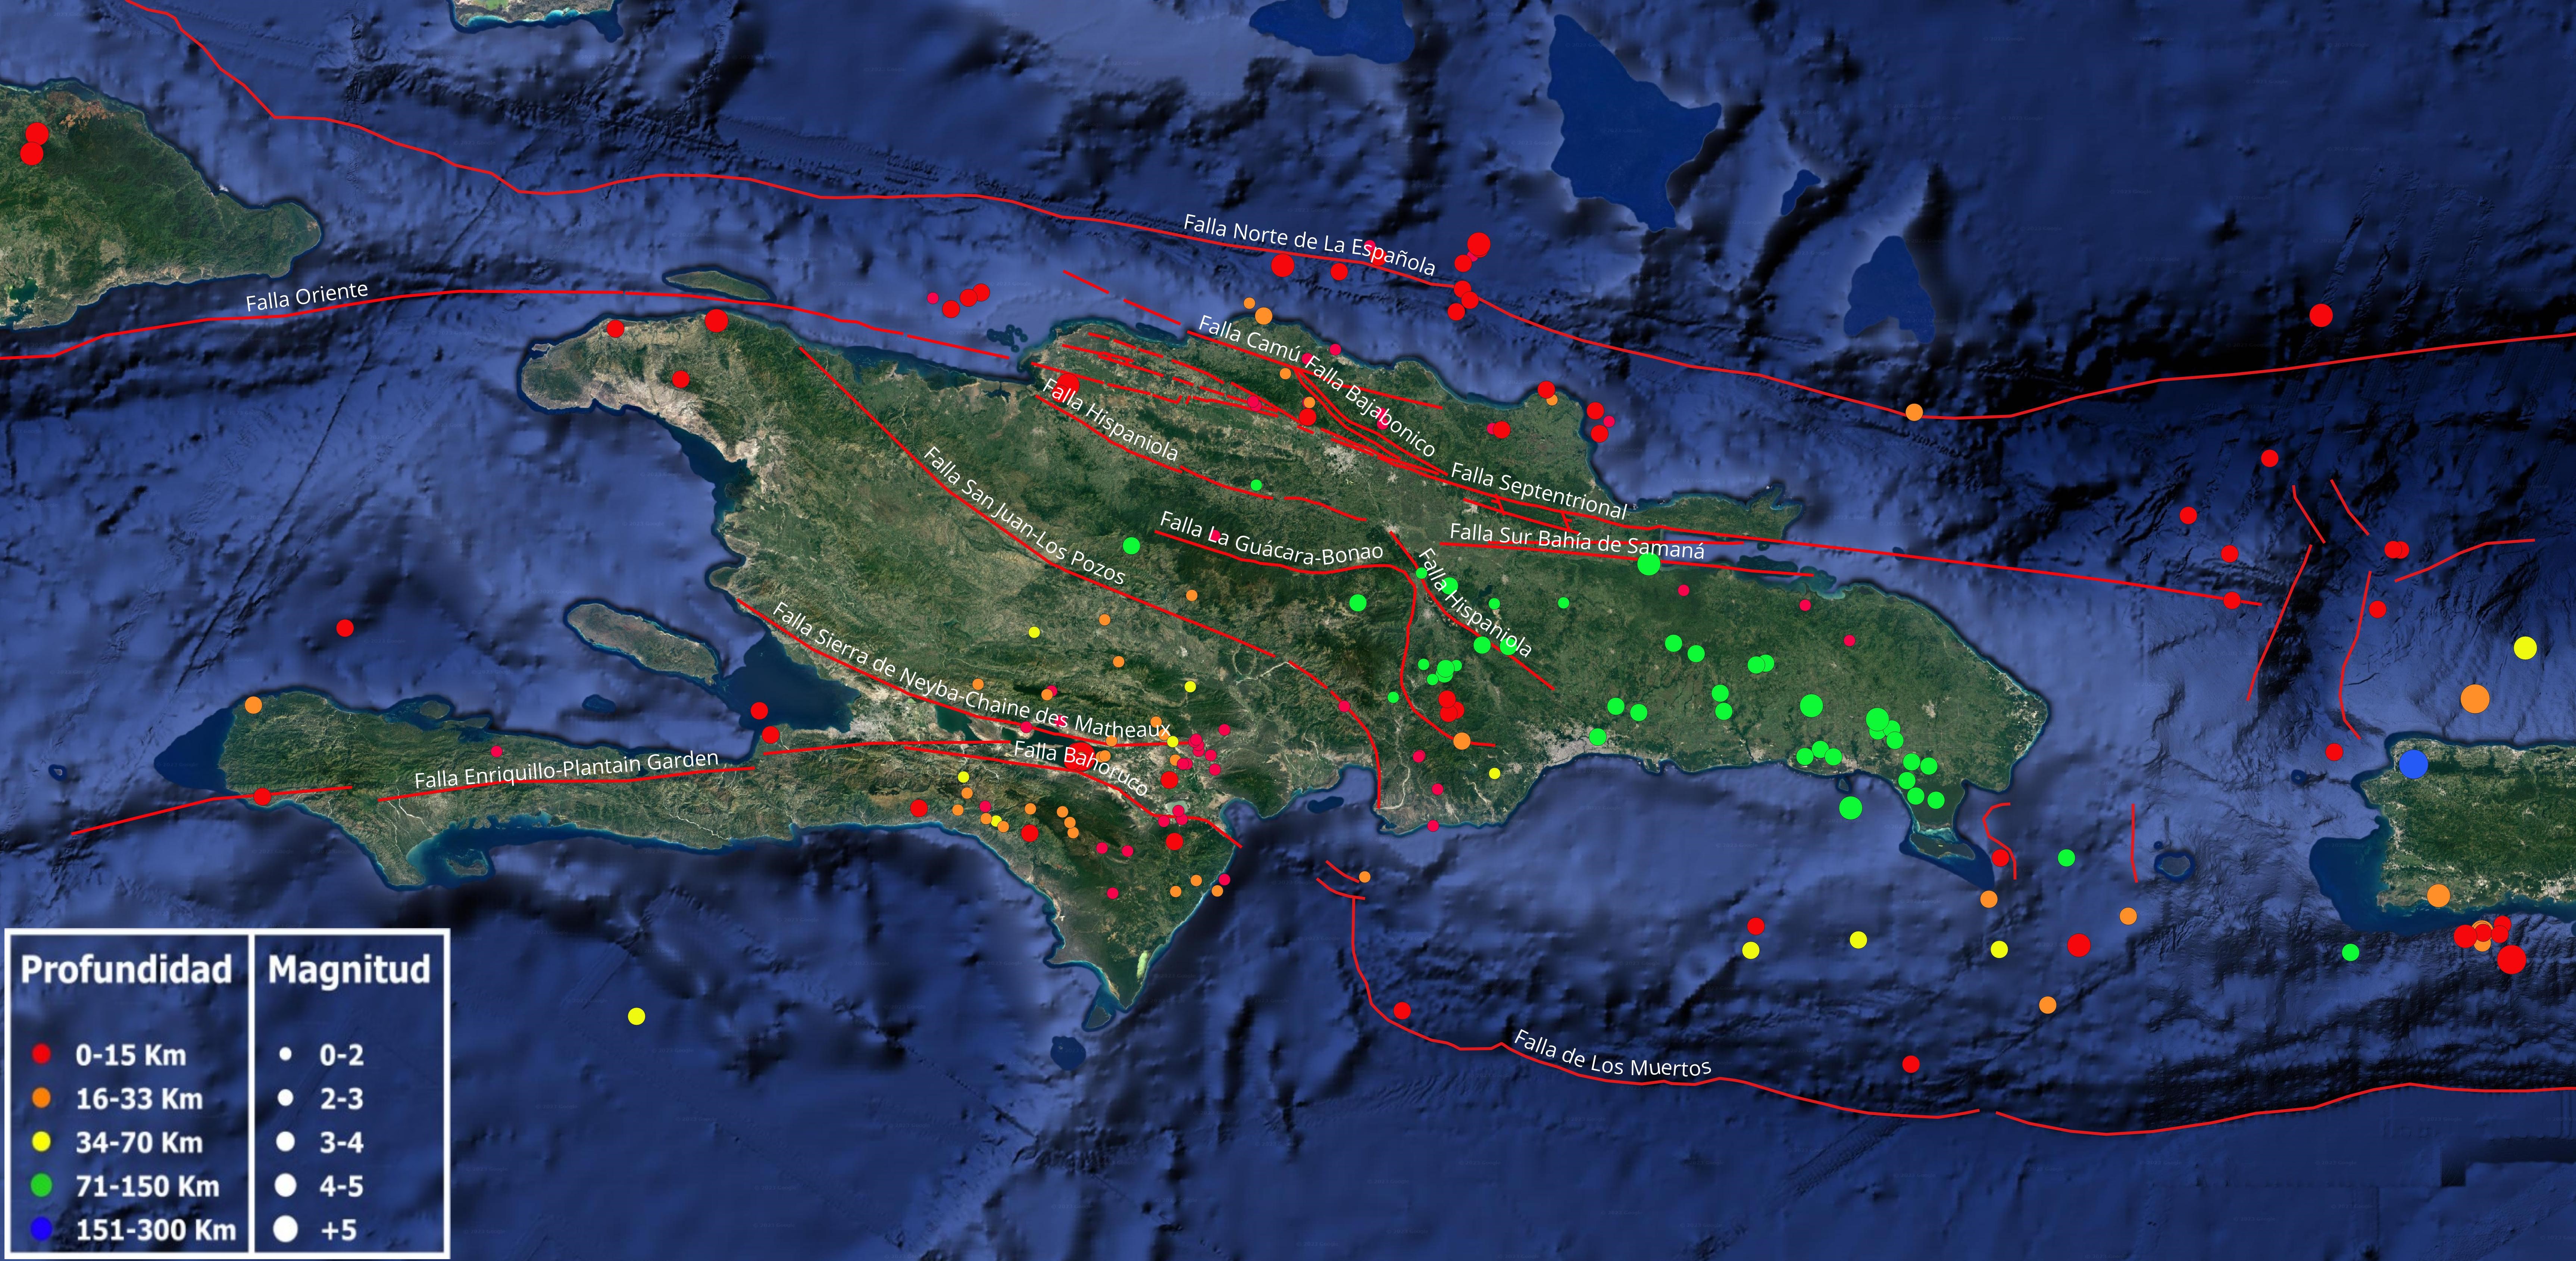 Imagen N° 1: Mapa cortesía de Google Earth mostrando la distribución de la sismicidad durante el mes de octubre 2023. Con lineamientos rojos, las principales falla geológicas de nuestra isla de La Española (compilado de varios autores)